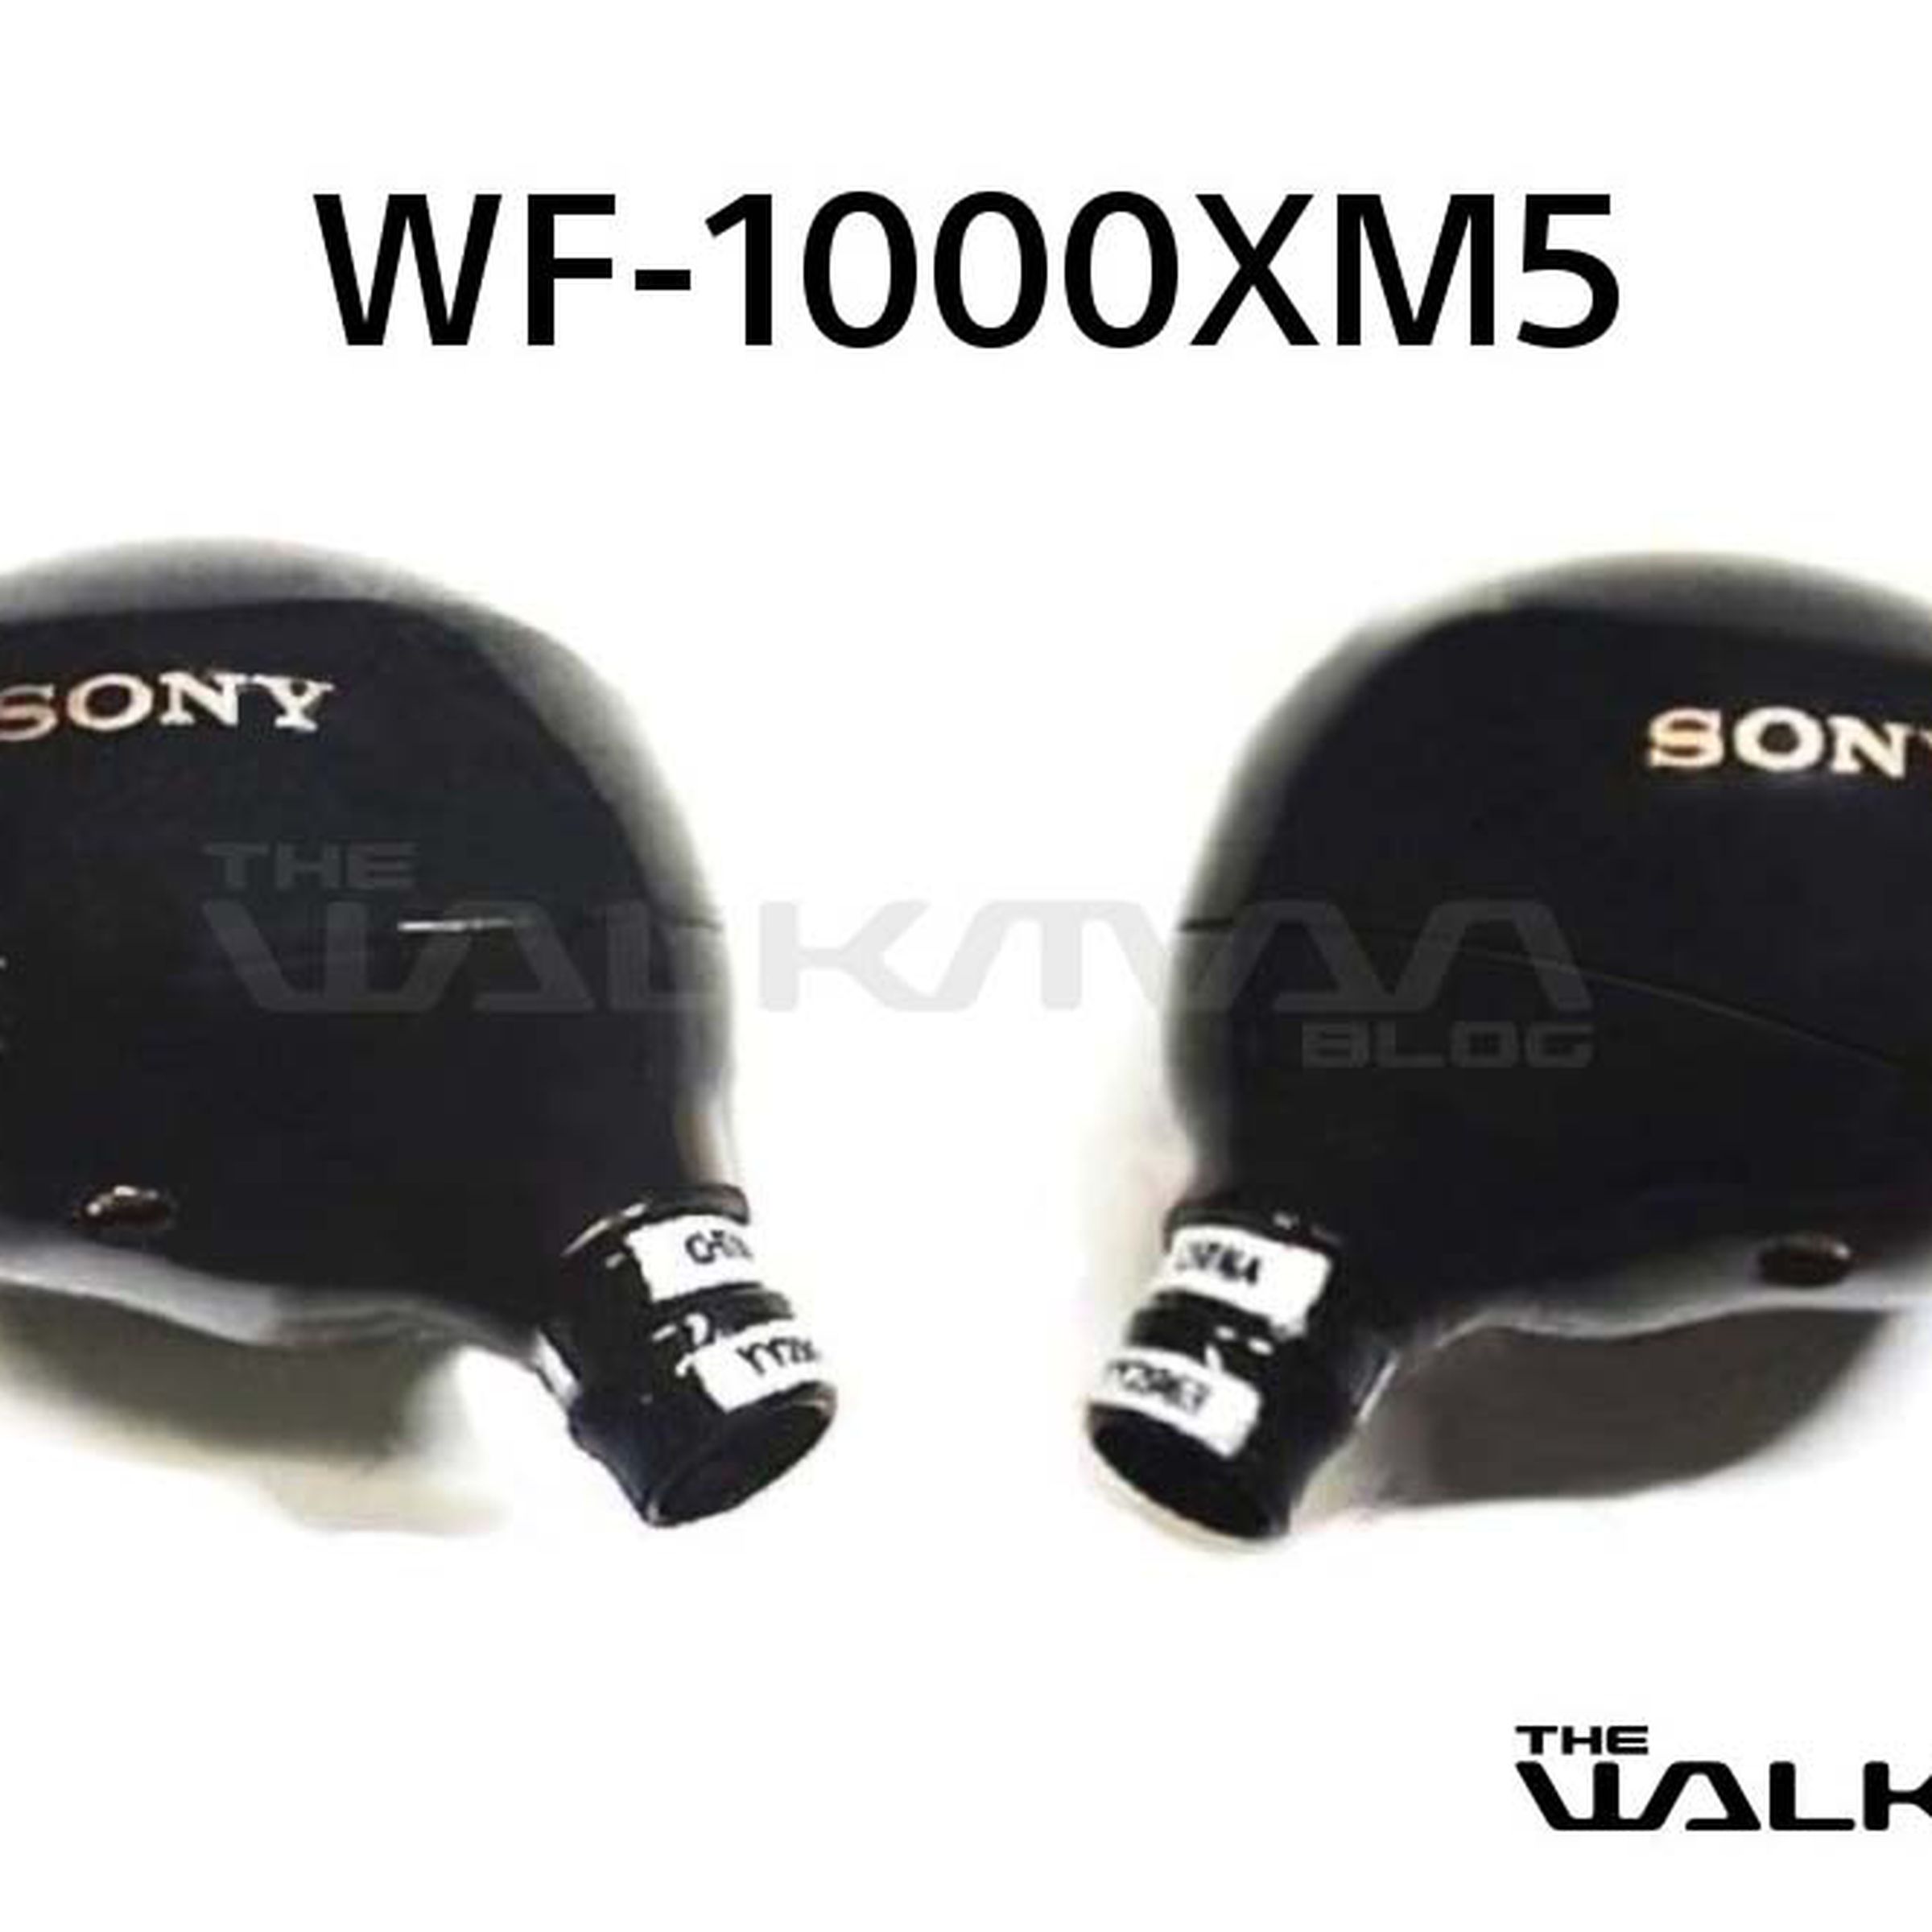 Two Sony WF-1000XM5 earbuds.